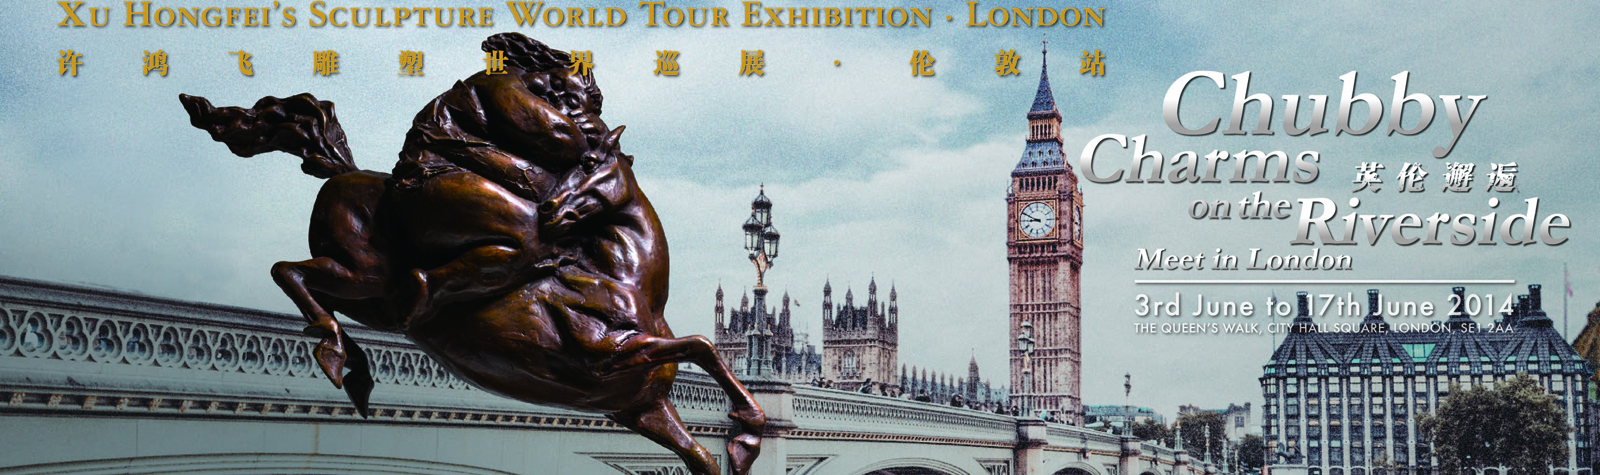 英伦邂逅——许鸿飞雕塑世界巡展伦敦站